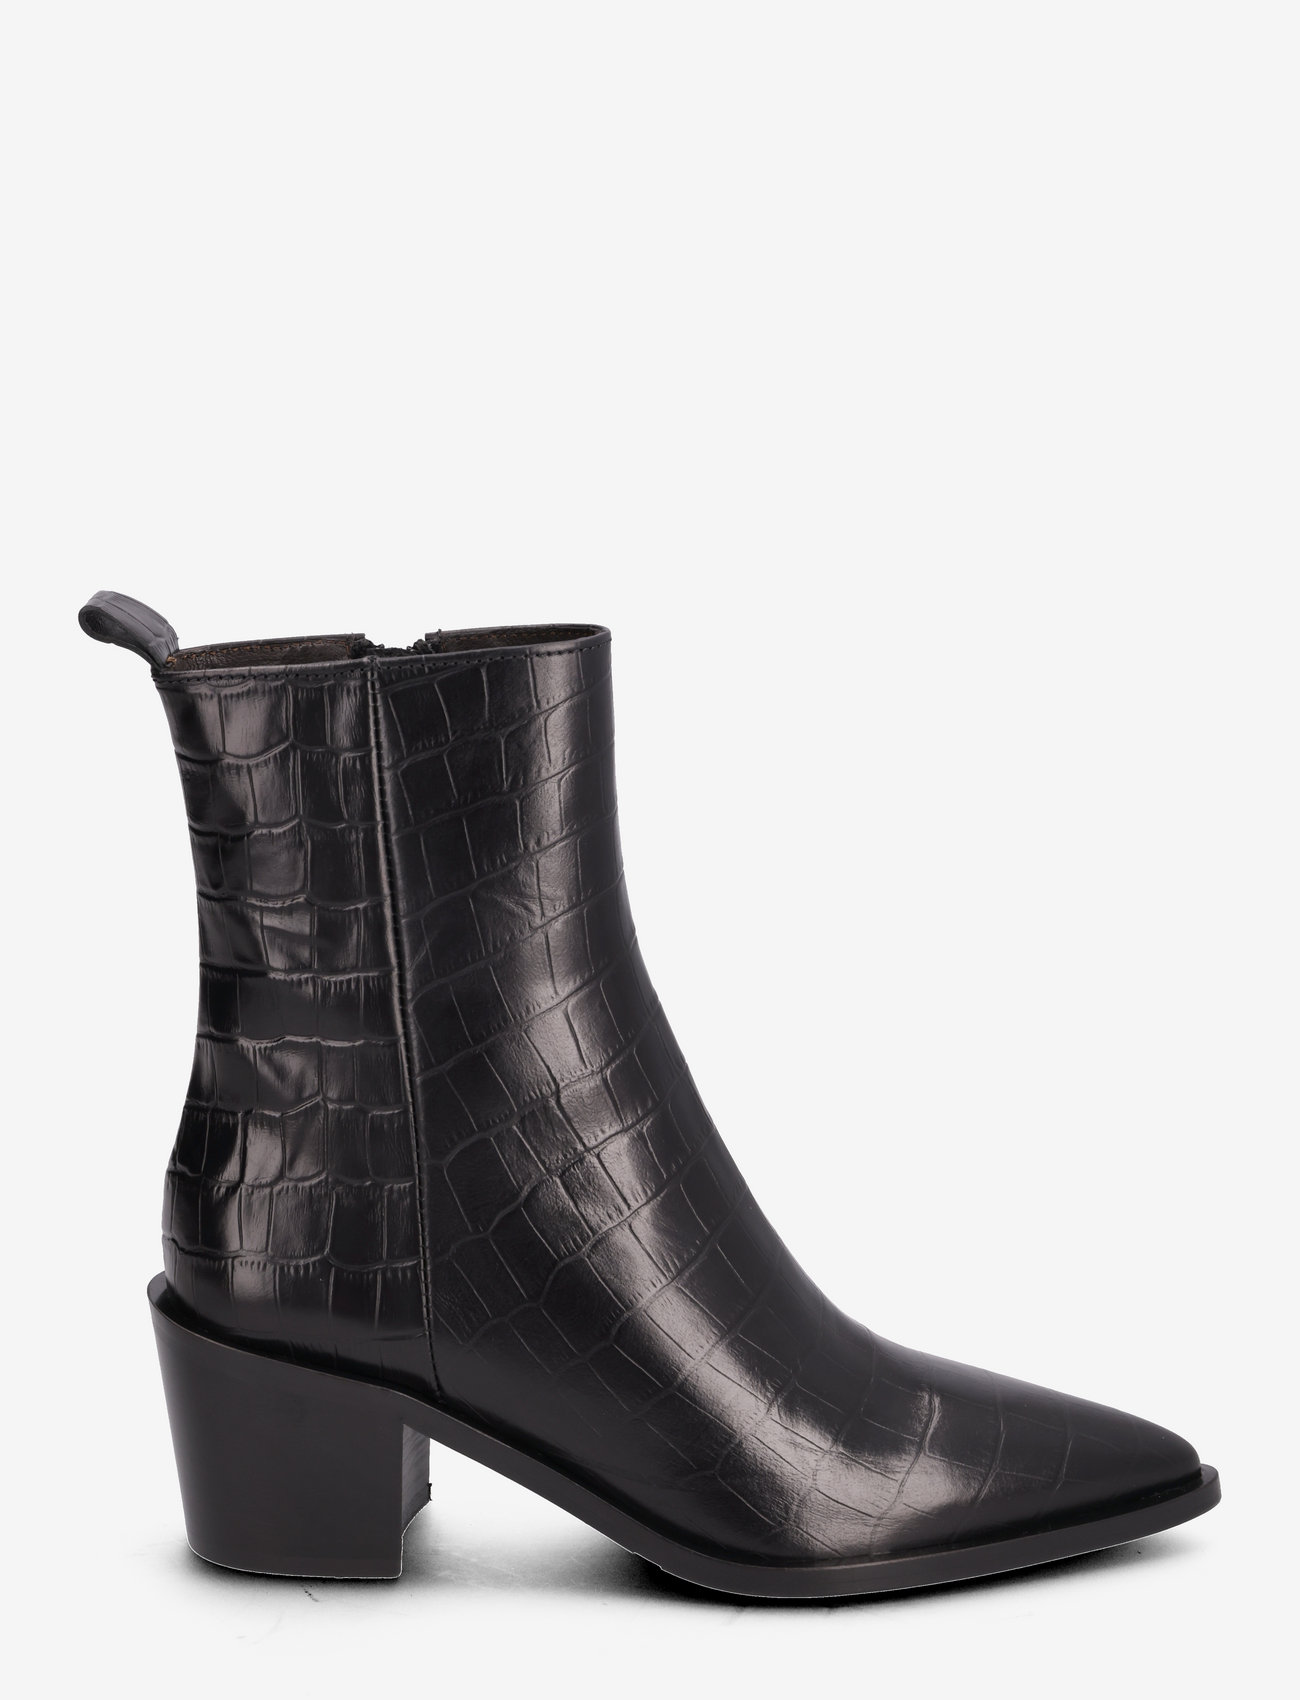 Billi Bi - Booties - high heel - black monterrey croco - 1